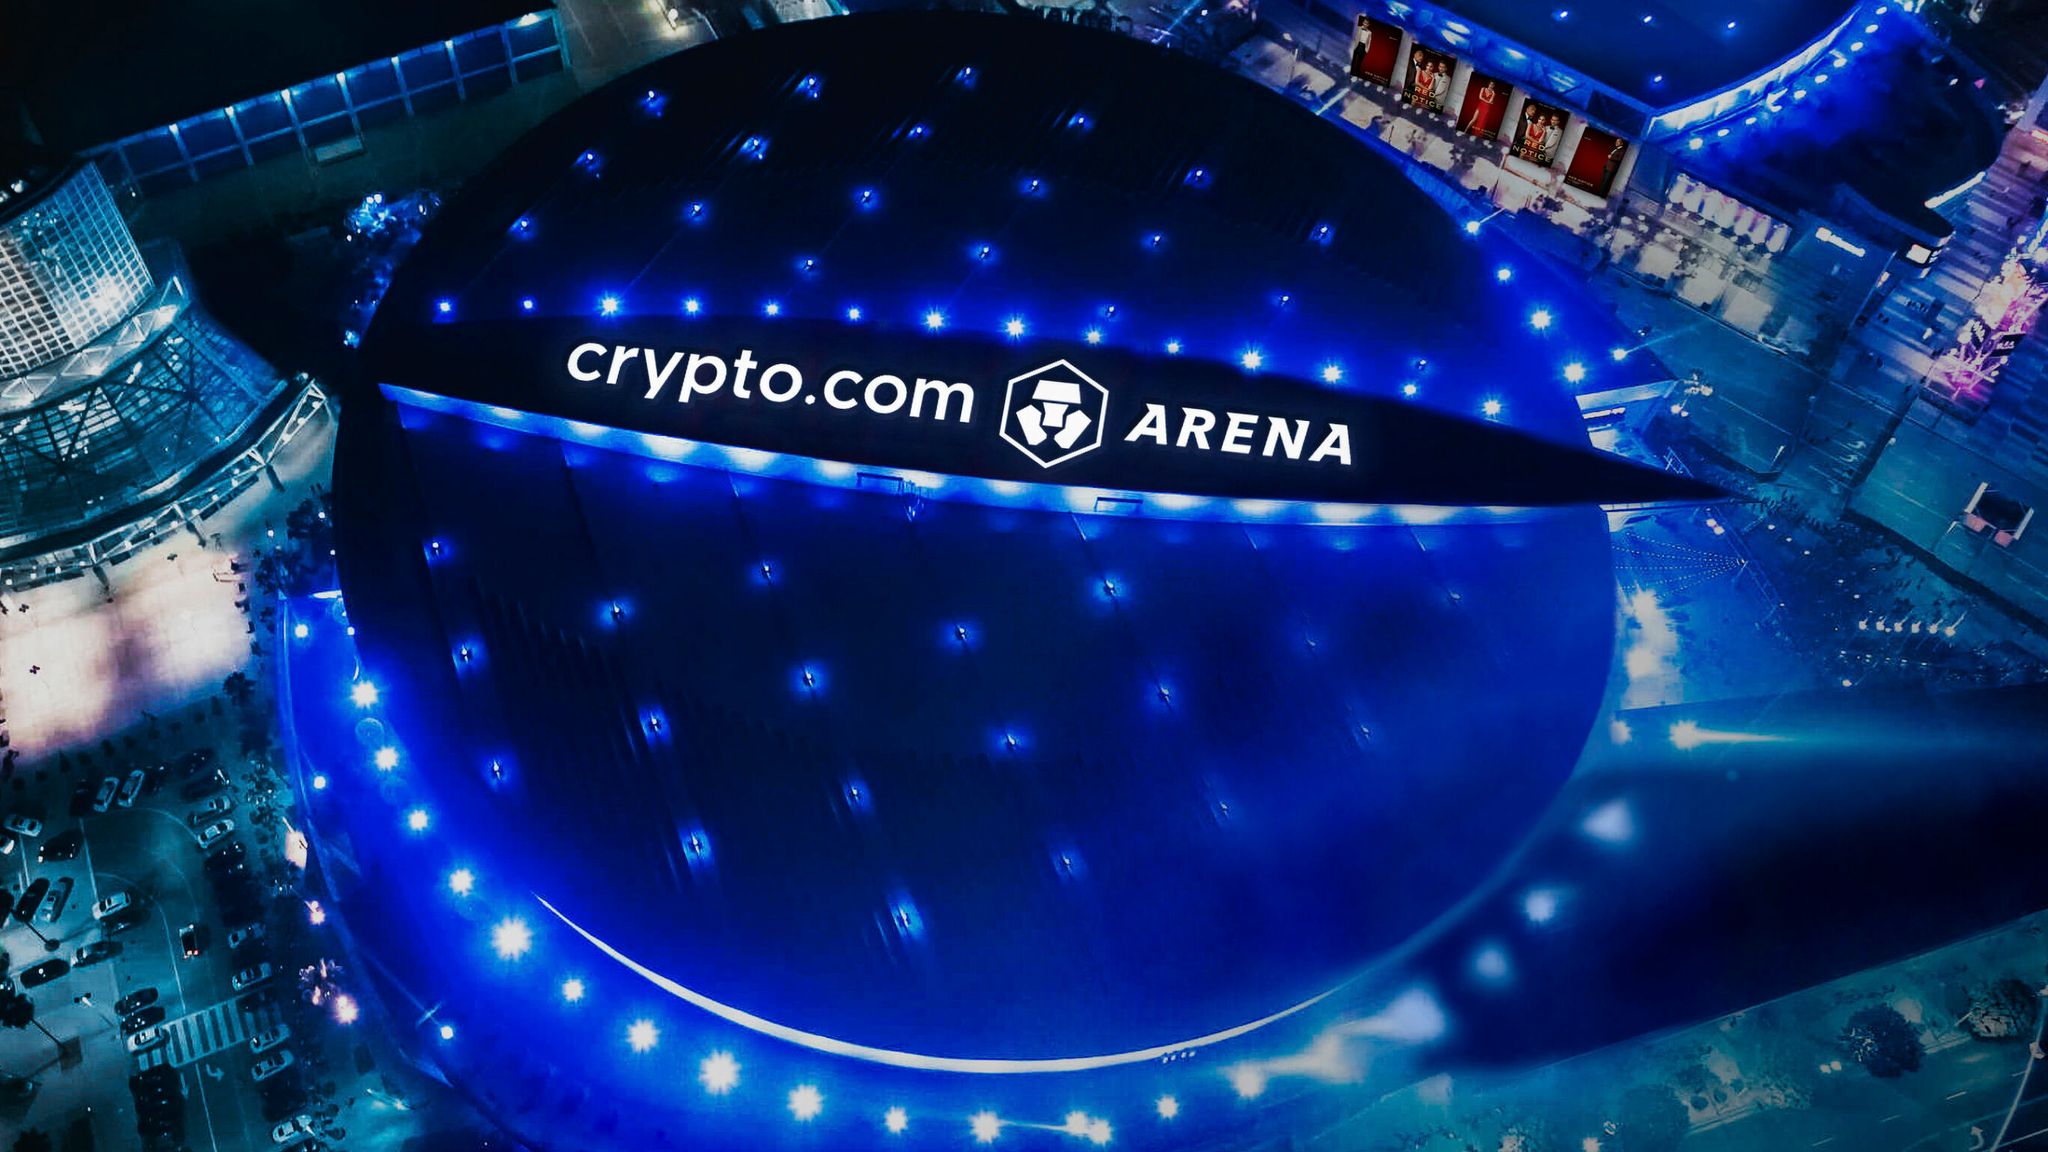 crypto.com arena logo